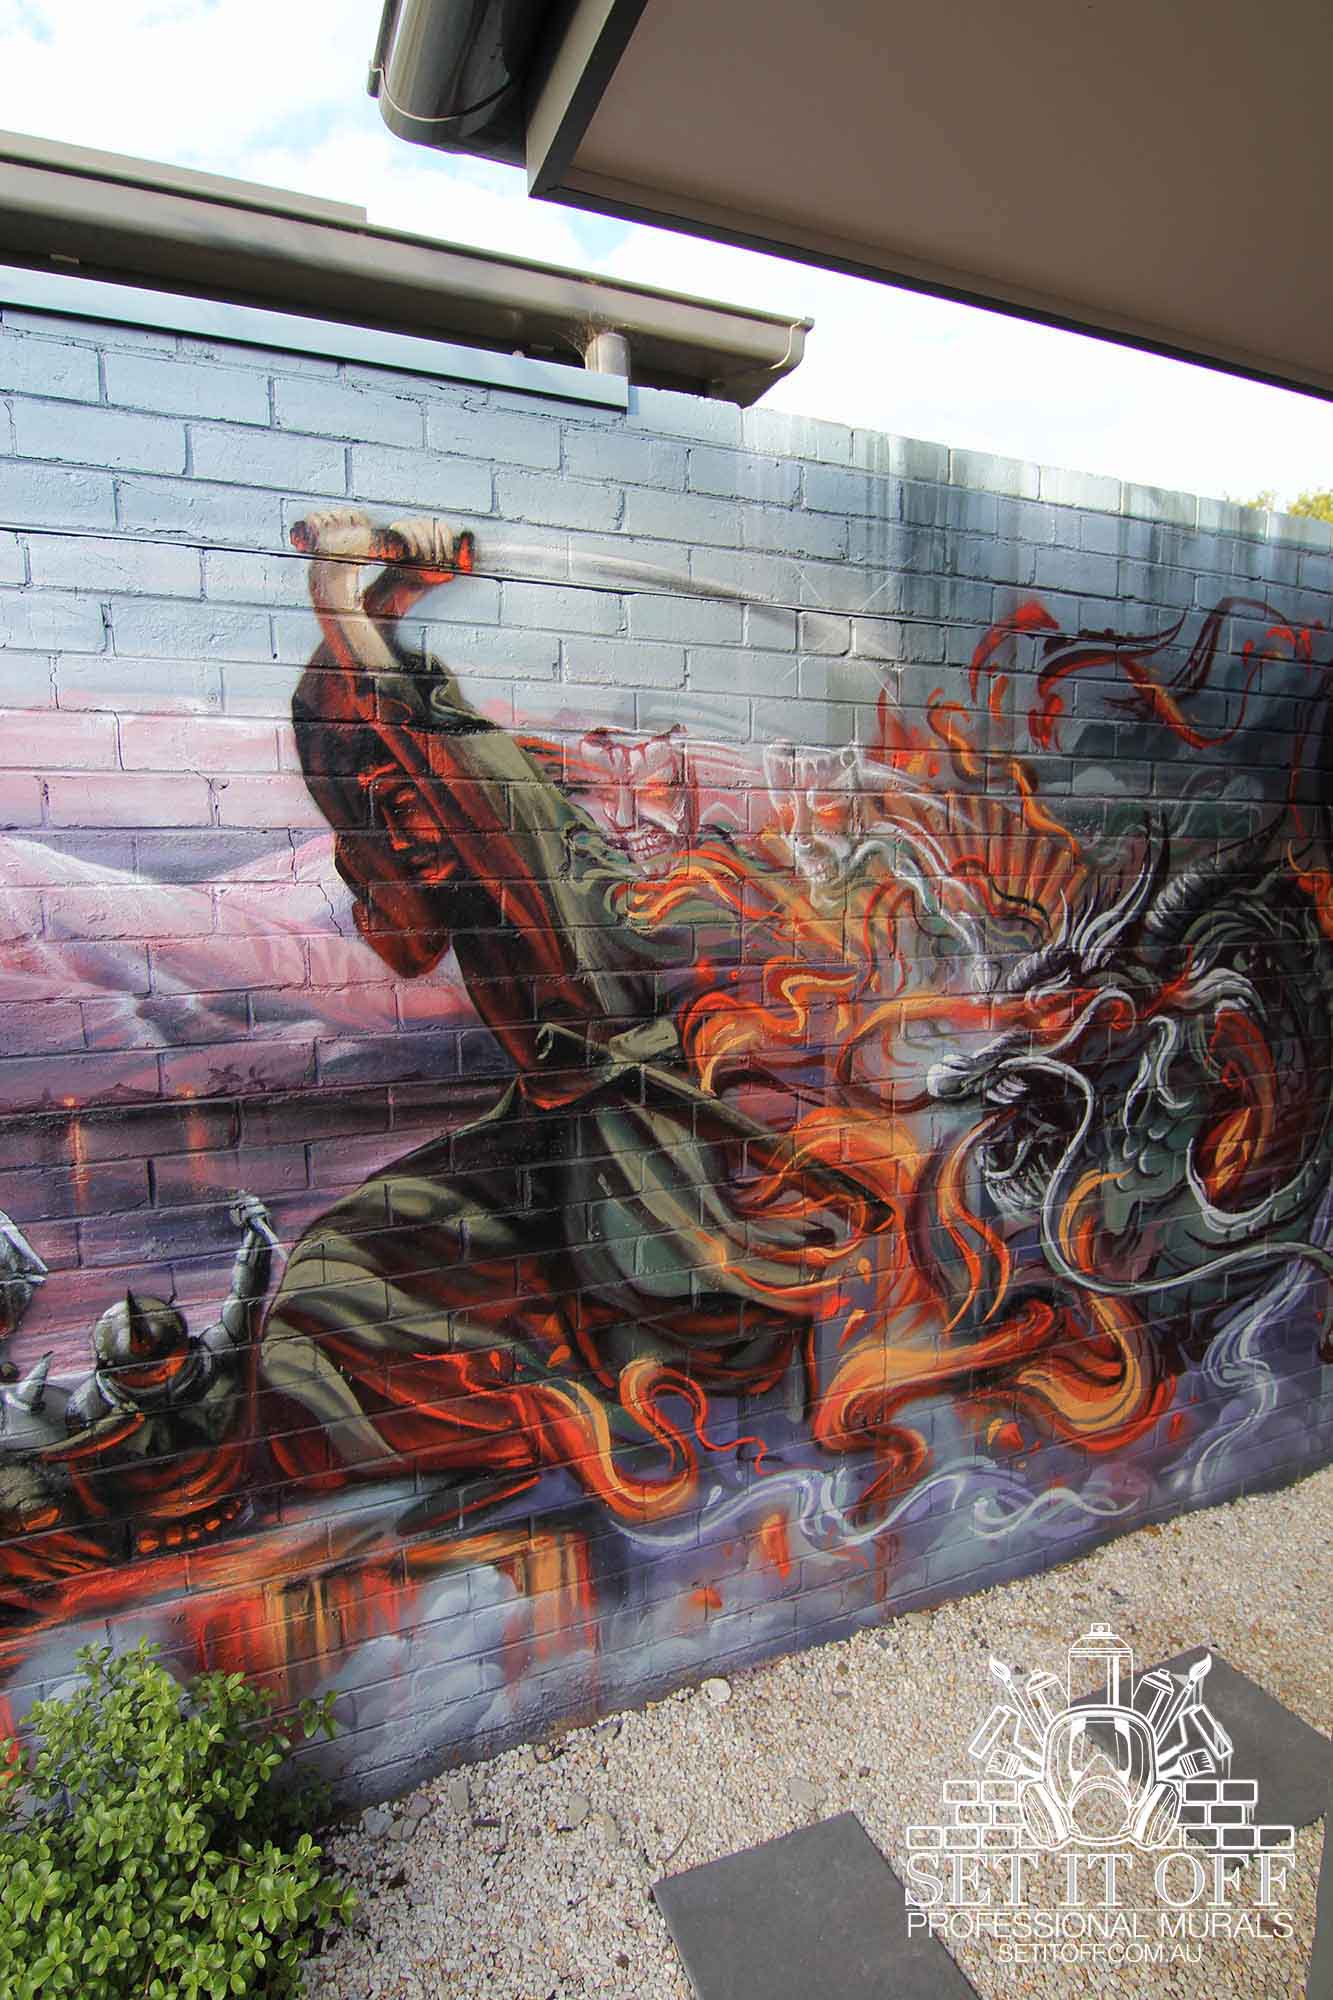 Samurai outdoor graffiti wall mural